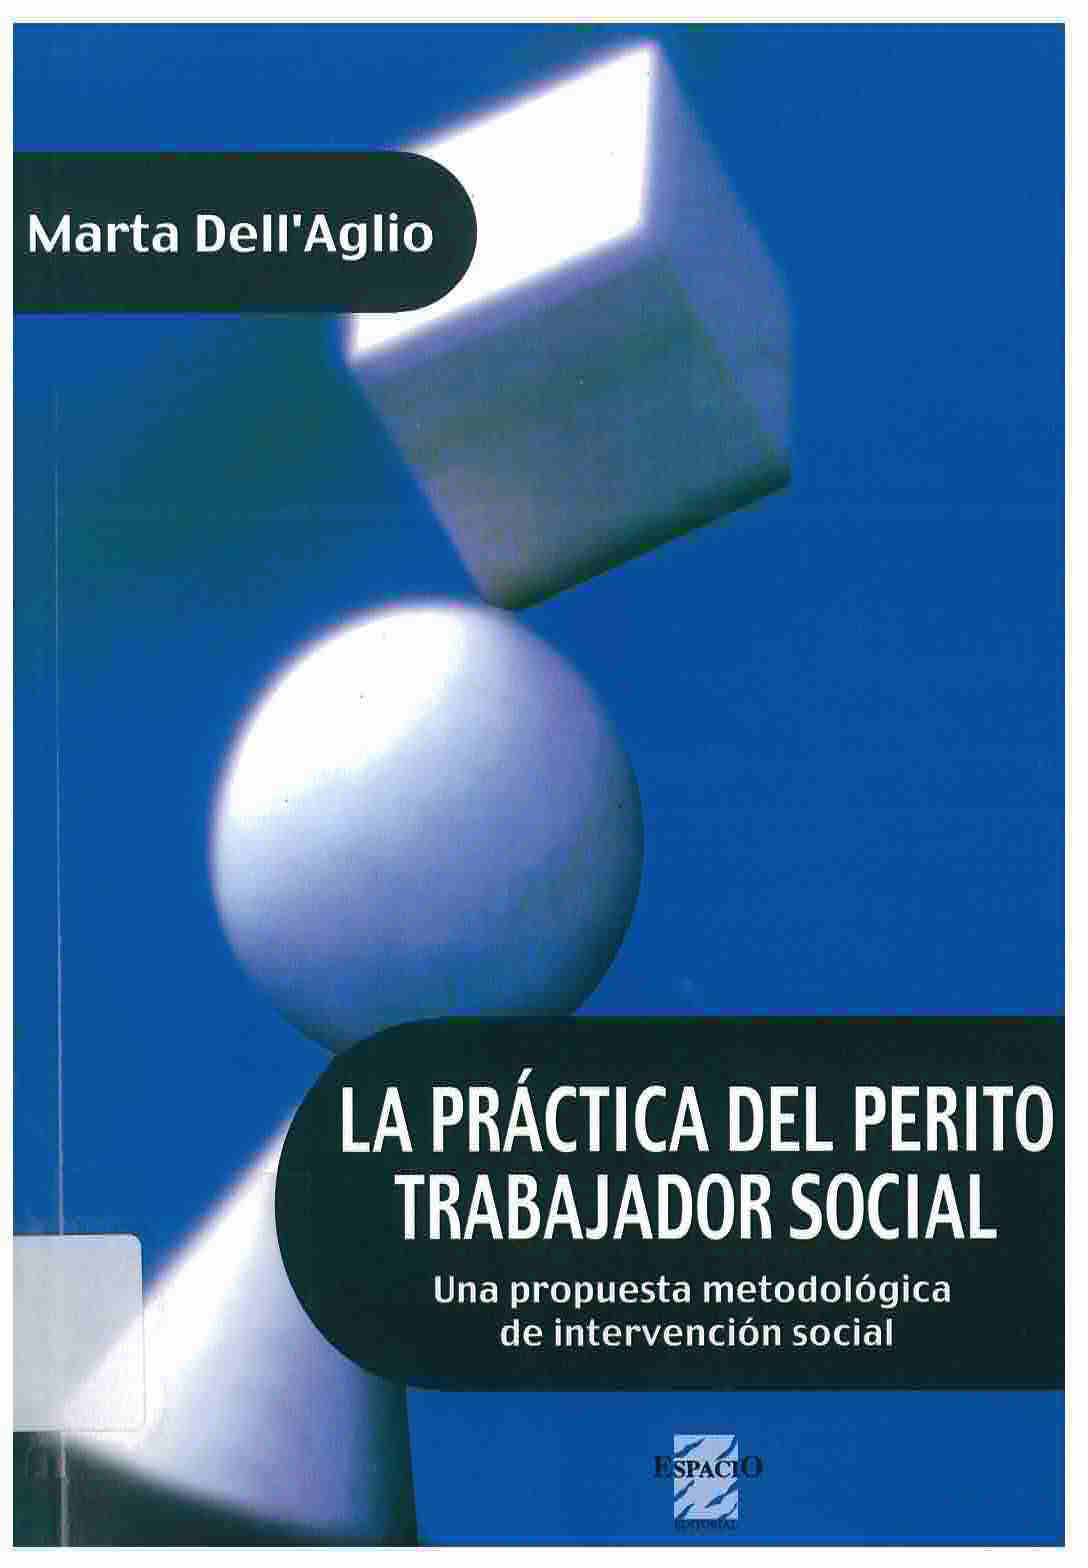 La práctica del perito trabajador social : una propuesta metodológica de intervención social